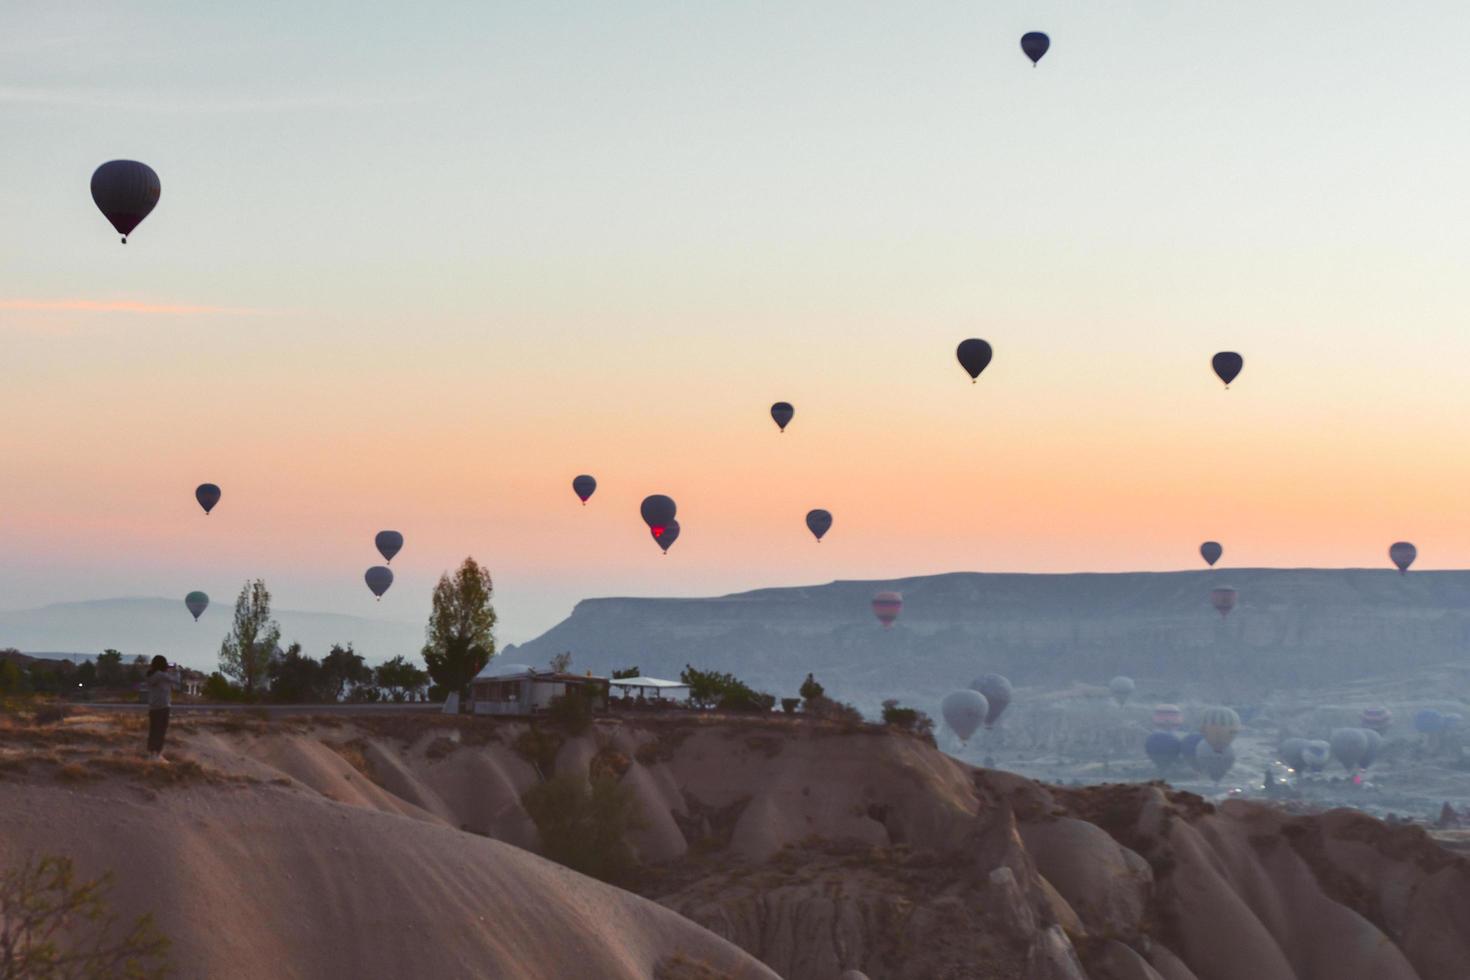 jong kaukasisch romantisch koppel zit en geniet van ballonnen in de lucht op zonnige ochtend bij zonsopgang tijdens het kamperen .travel cappadocia ontspannende vakantiebestemming foto